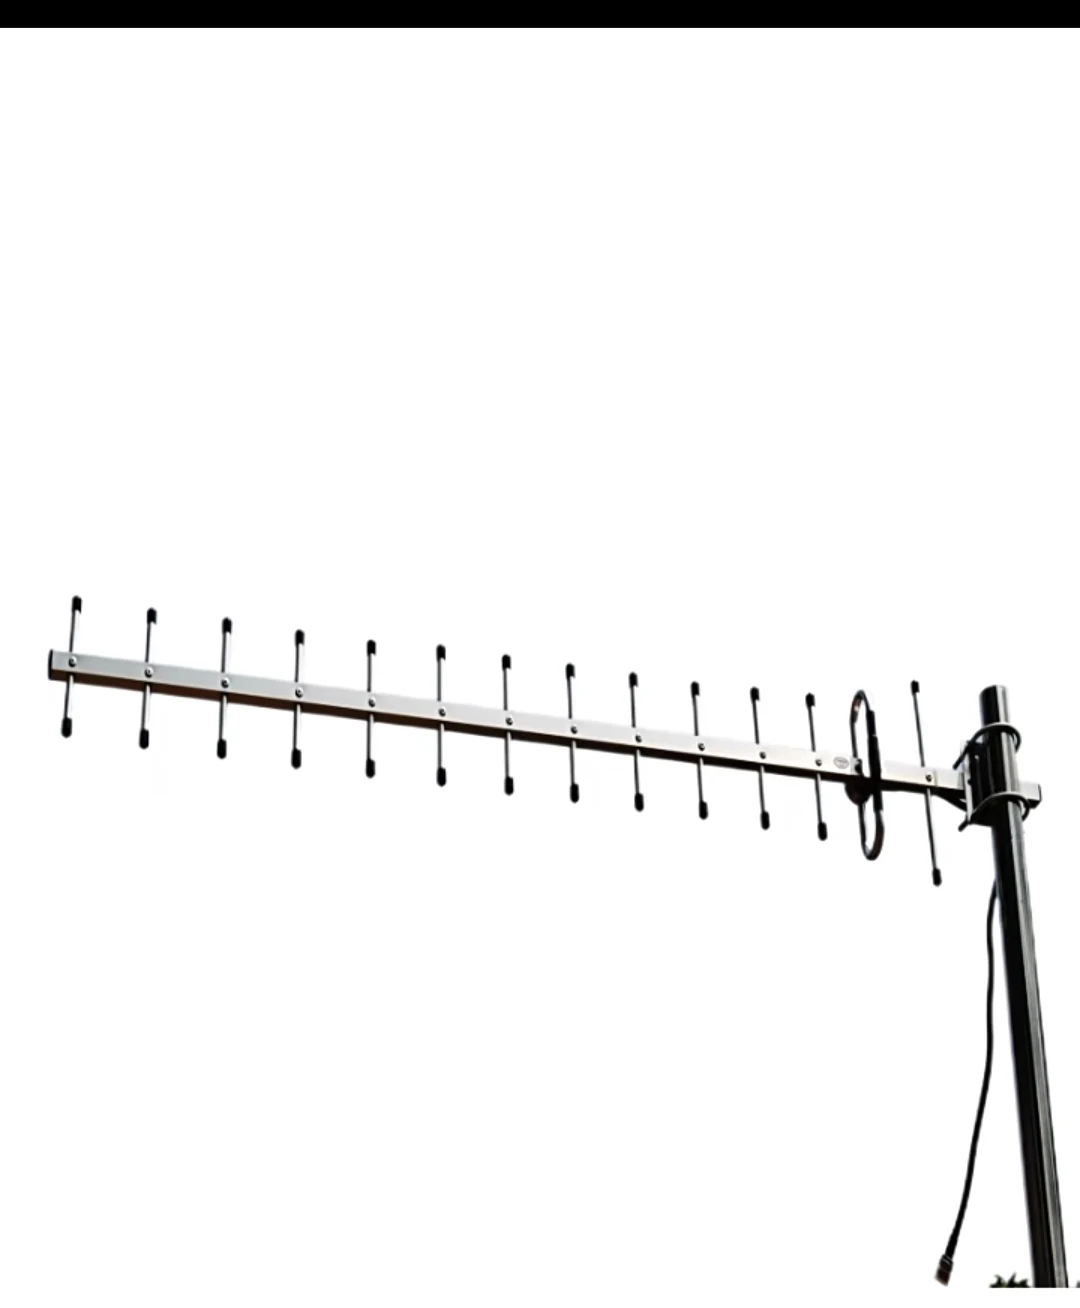 Базовая станция приема наружного сигнала 1.2G антенна yaig 14dBi SMA штекер 1200 МГц 14 элементов